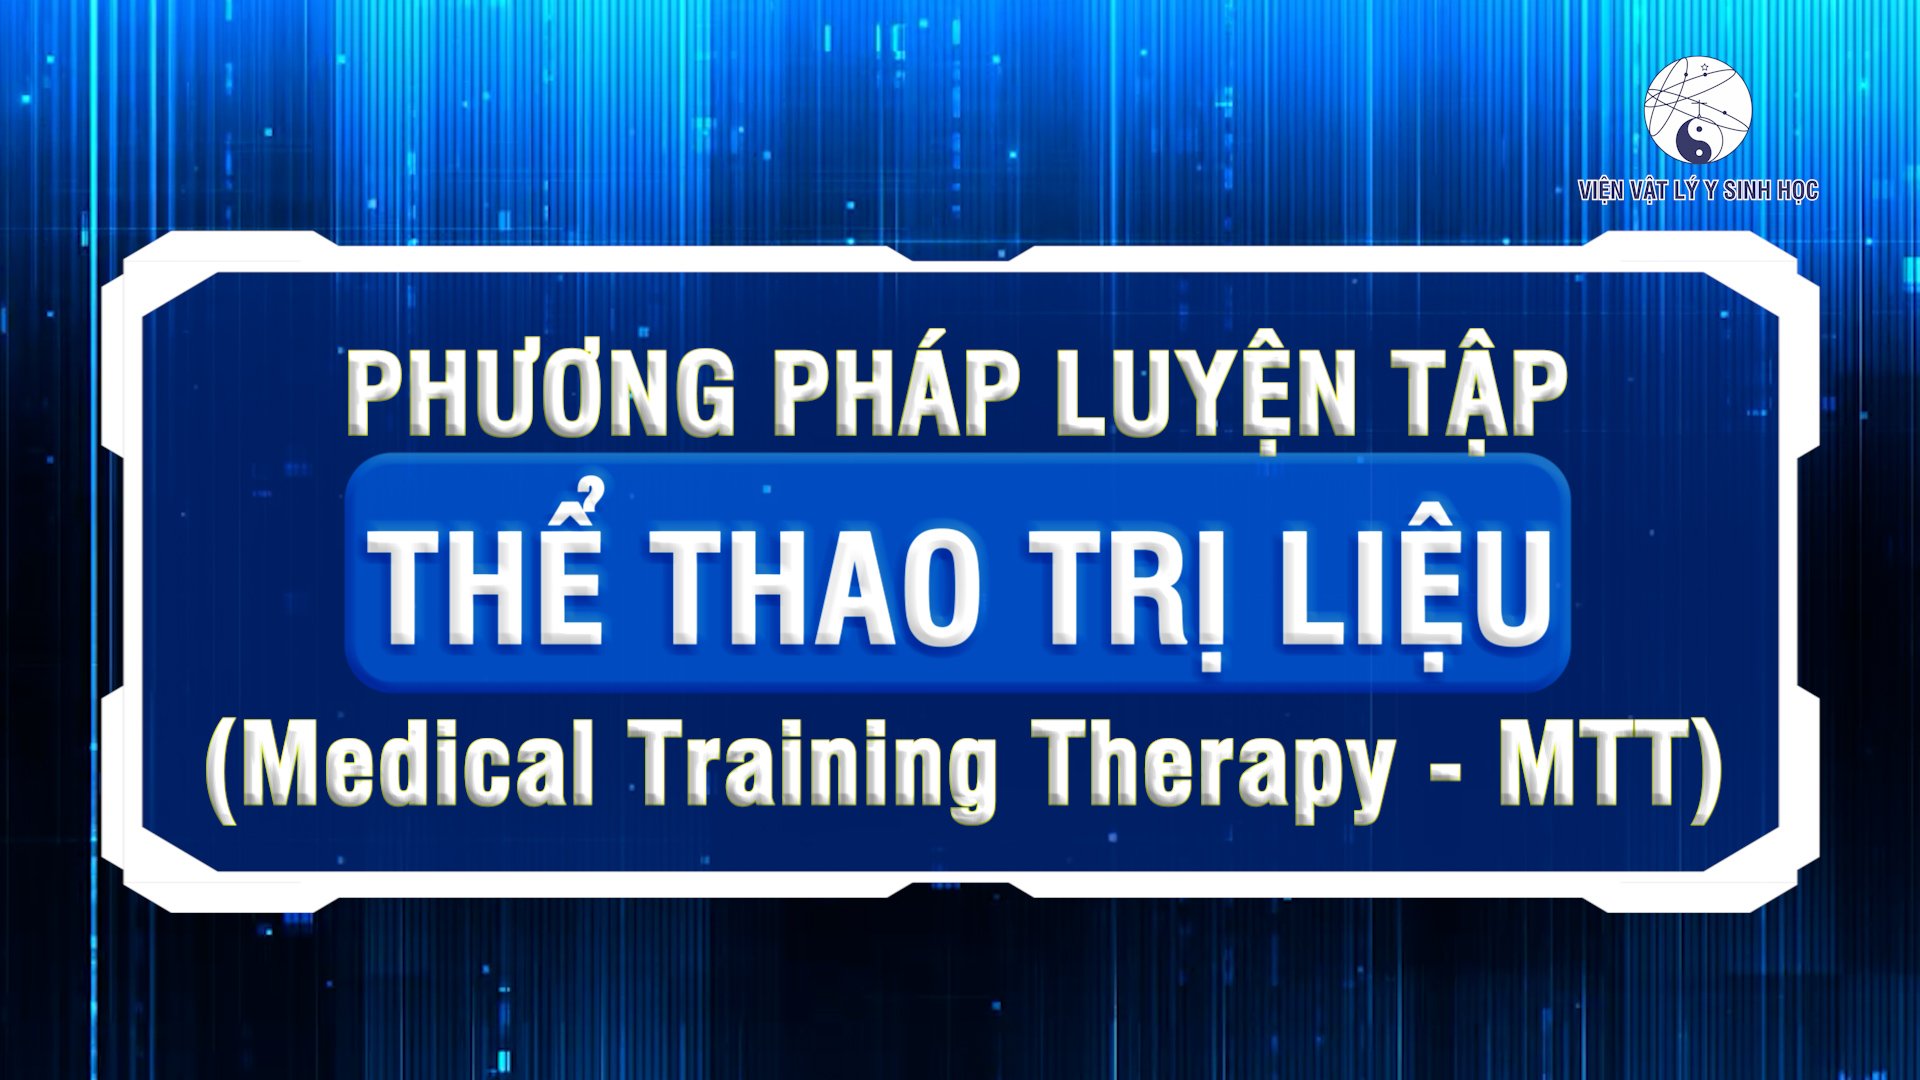 Phương pháp luyện tập Thể thao trị liệu (Medical Training Therapy - MTT)